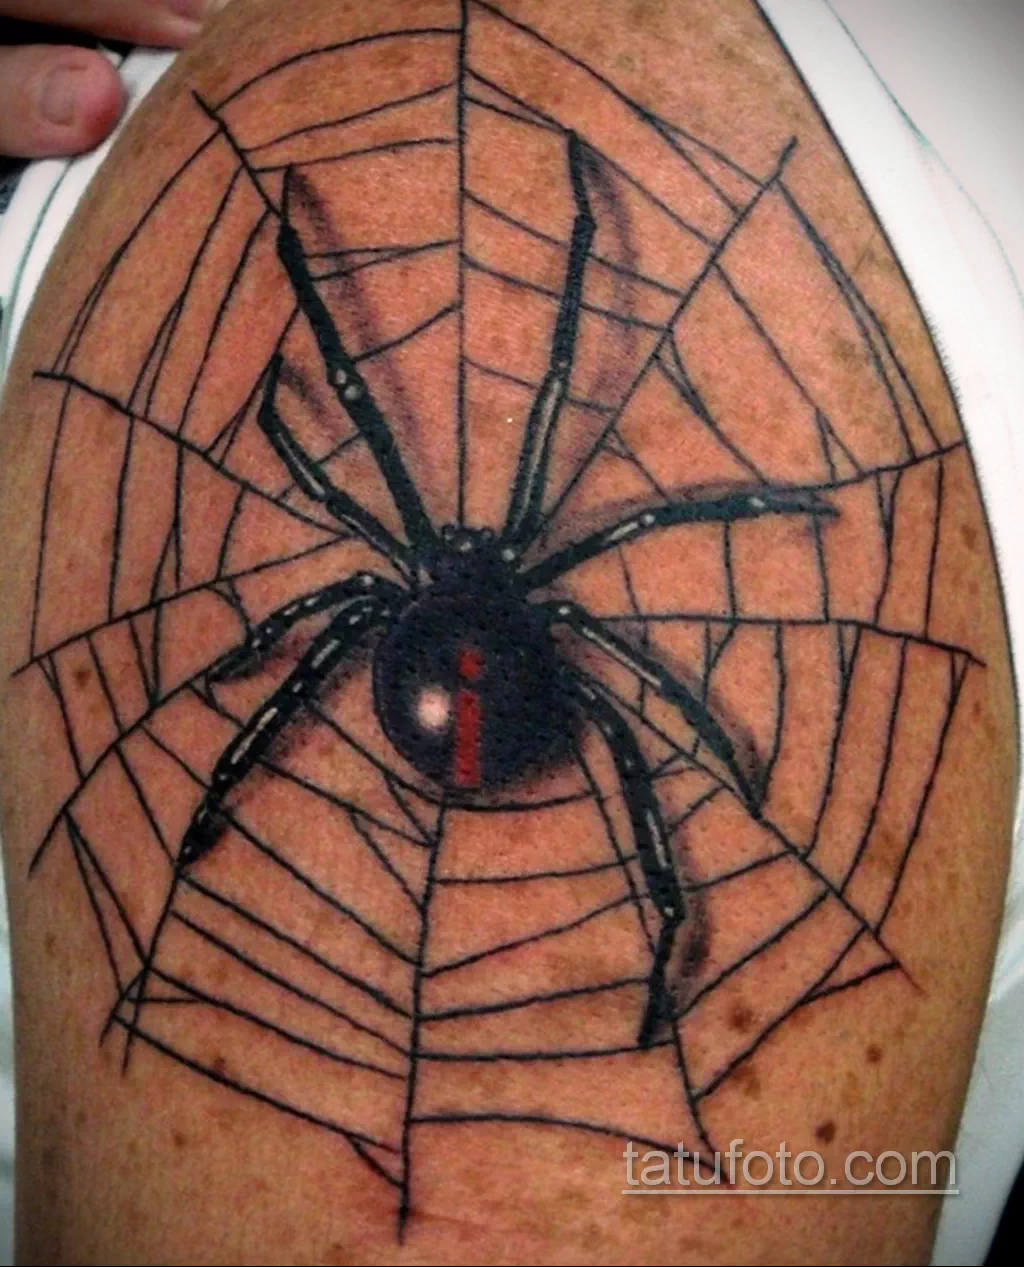 Тату паук у мужчины. Тату паук блэкворк. Тату паук в паутине. Татуировка паука на руке. Тату паук на плече.